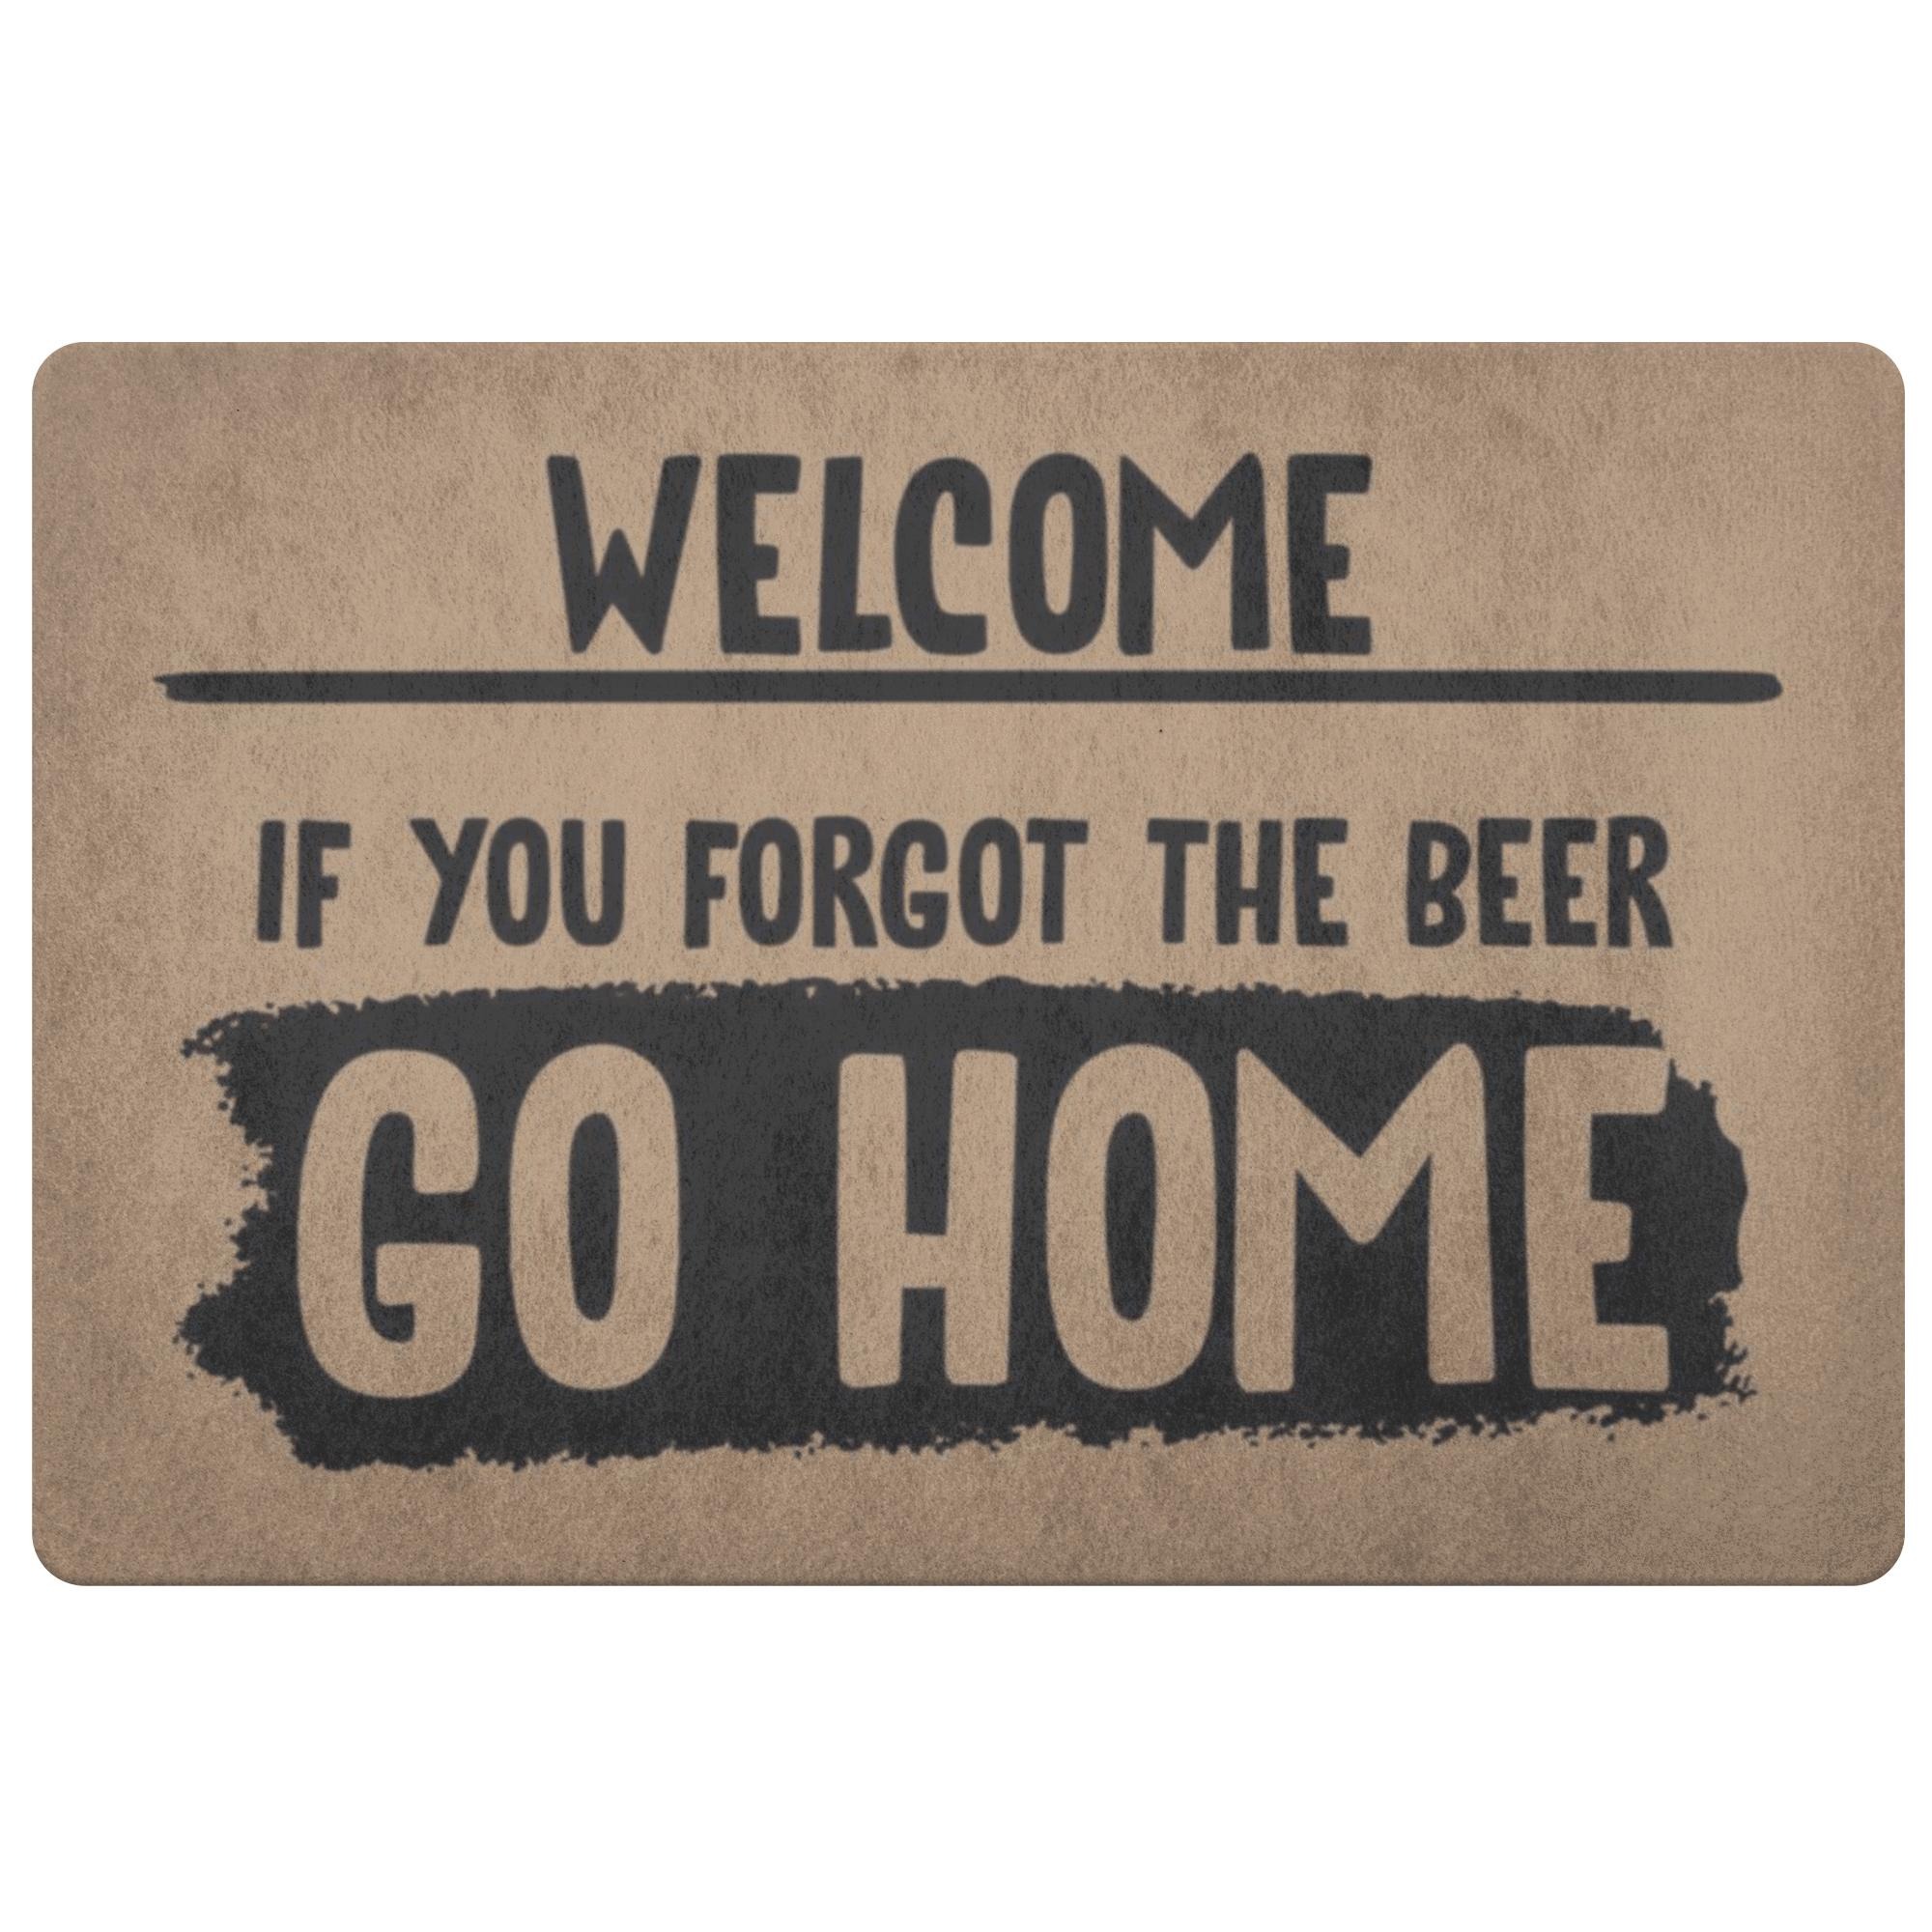 If you forgot beer go home doormats